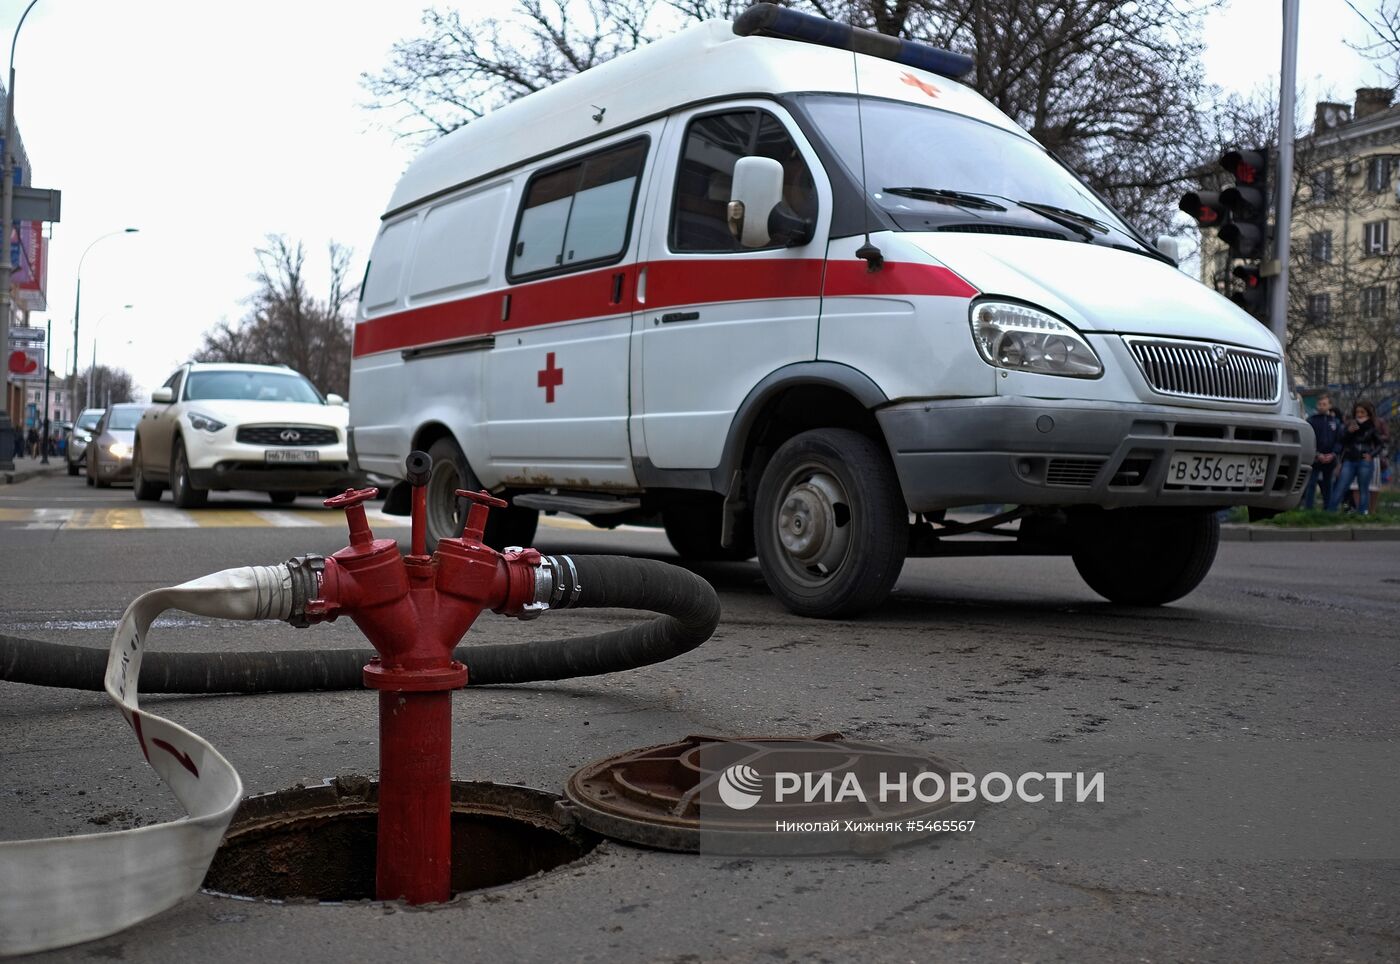 Проверка пожарной безопасности в ТЦ "Галерея Краснодар" в Краснодаре